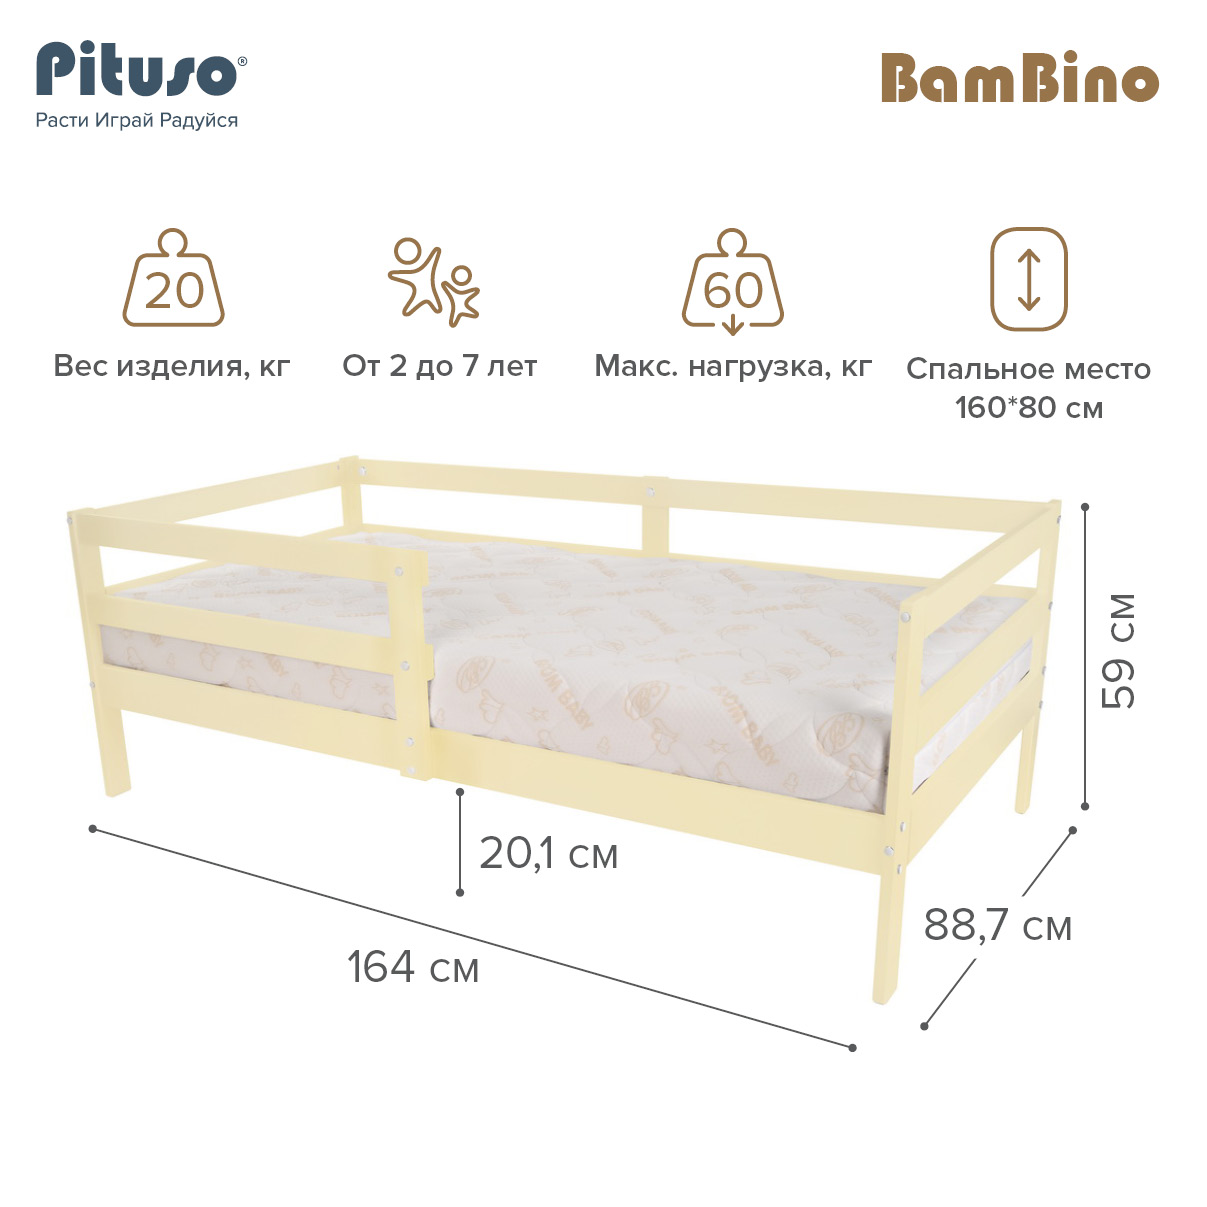 Кровать подростковая Pituso BamBino Ваниль подростковая кровать pituso софа эко